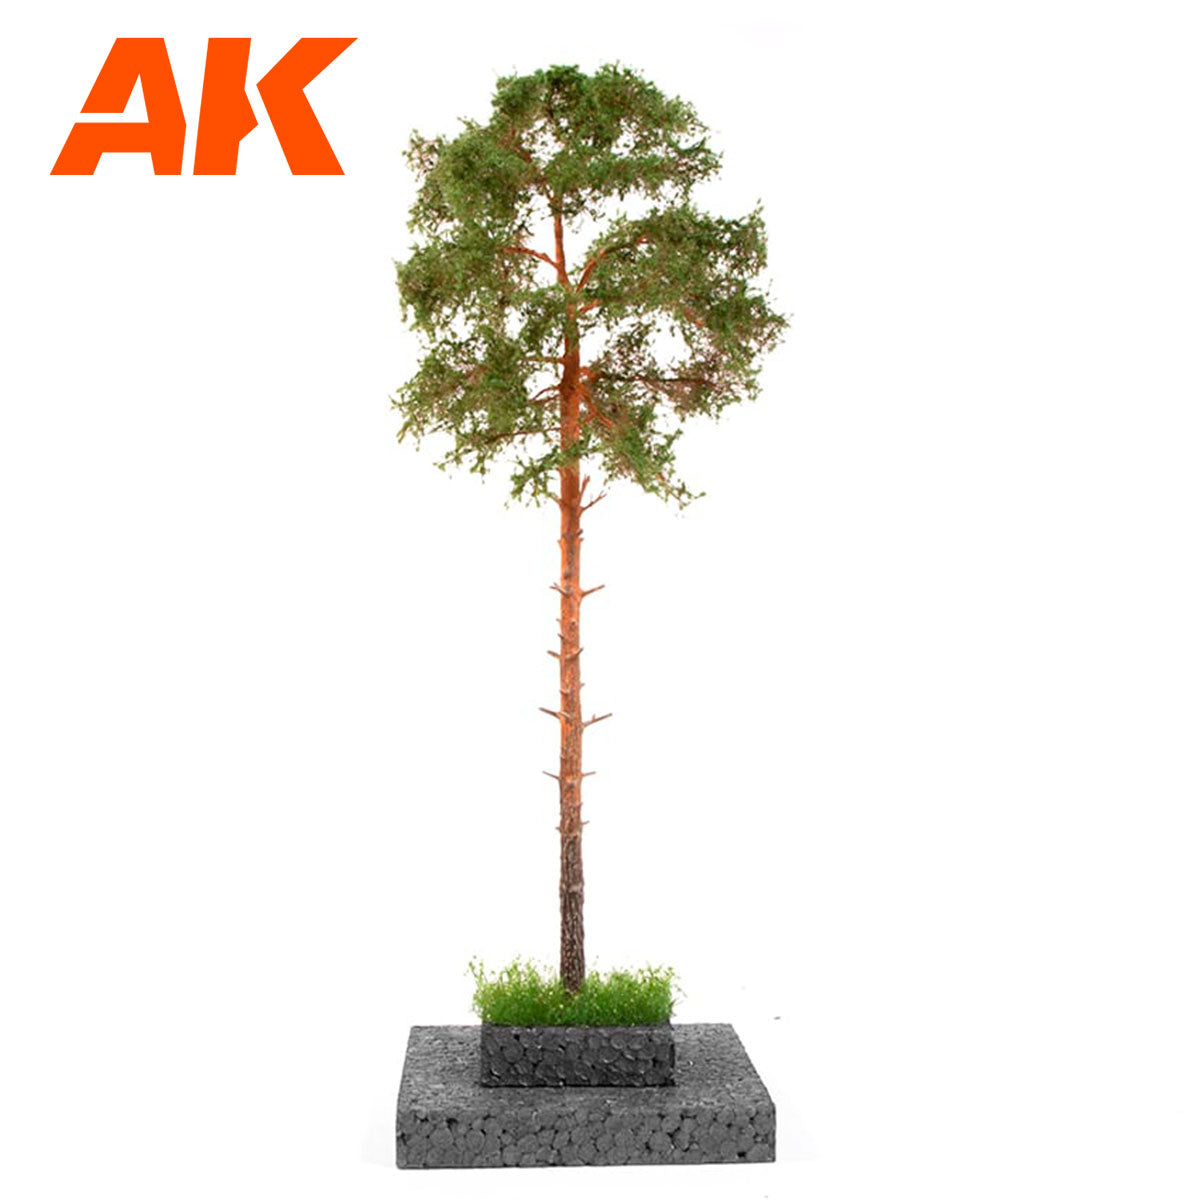 AK8188 - Pine Tree 1/35